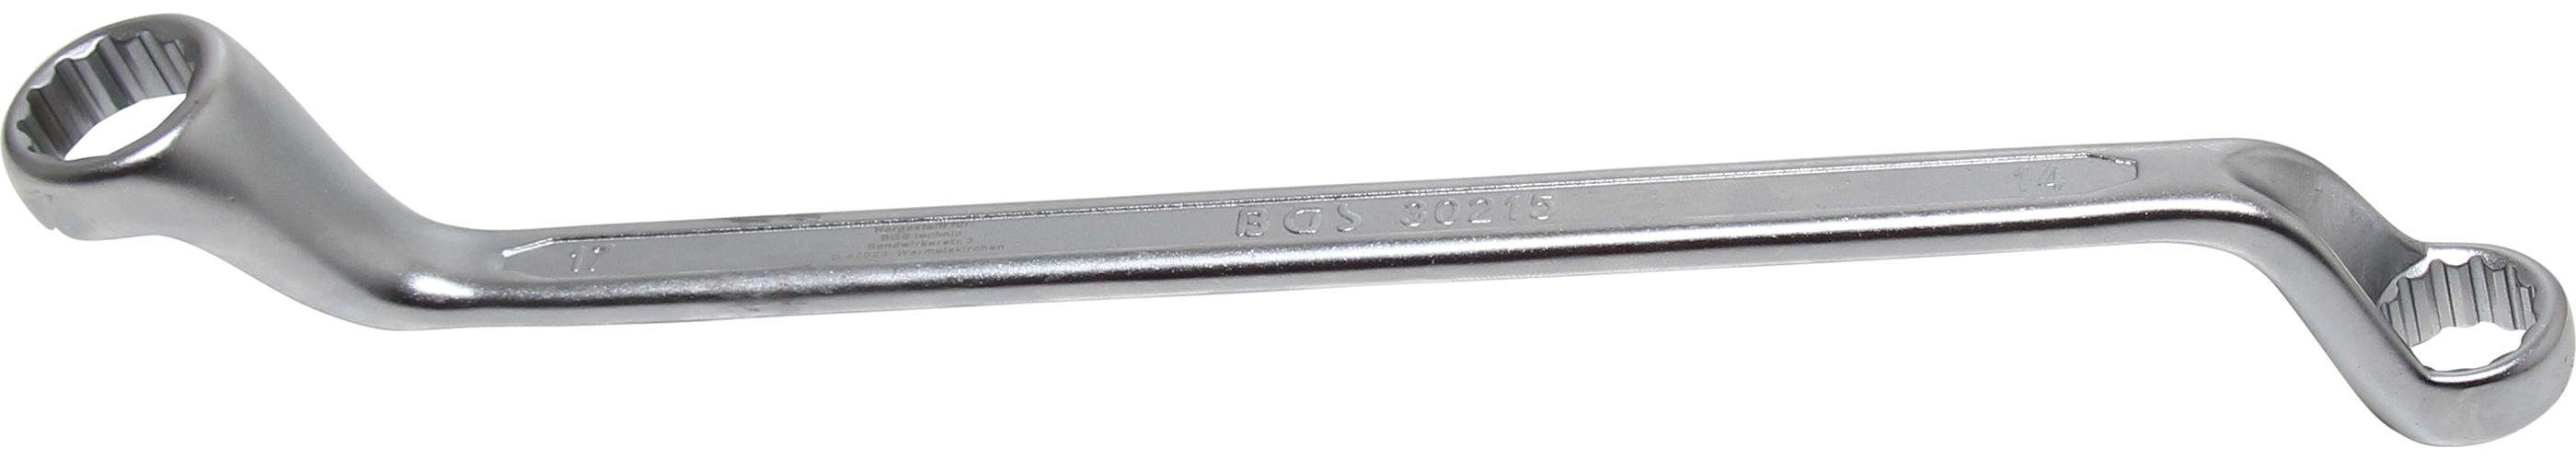 【Vertrauen】 BGS technic Ringschlüssel Doppel-Ringschlüssel, tief x 17 mm 14 gekröpft, SW